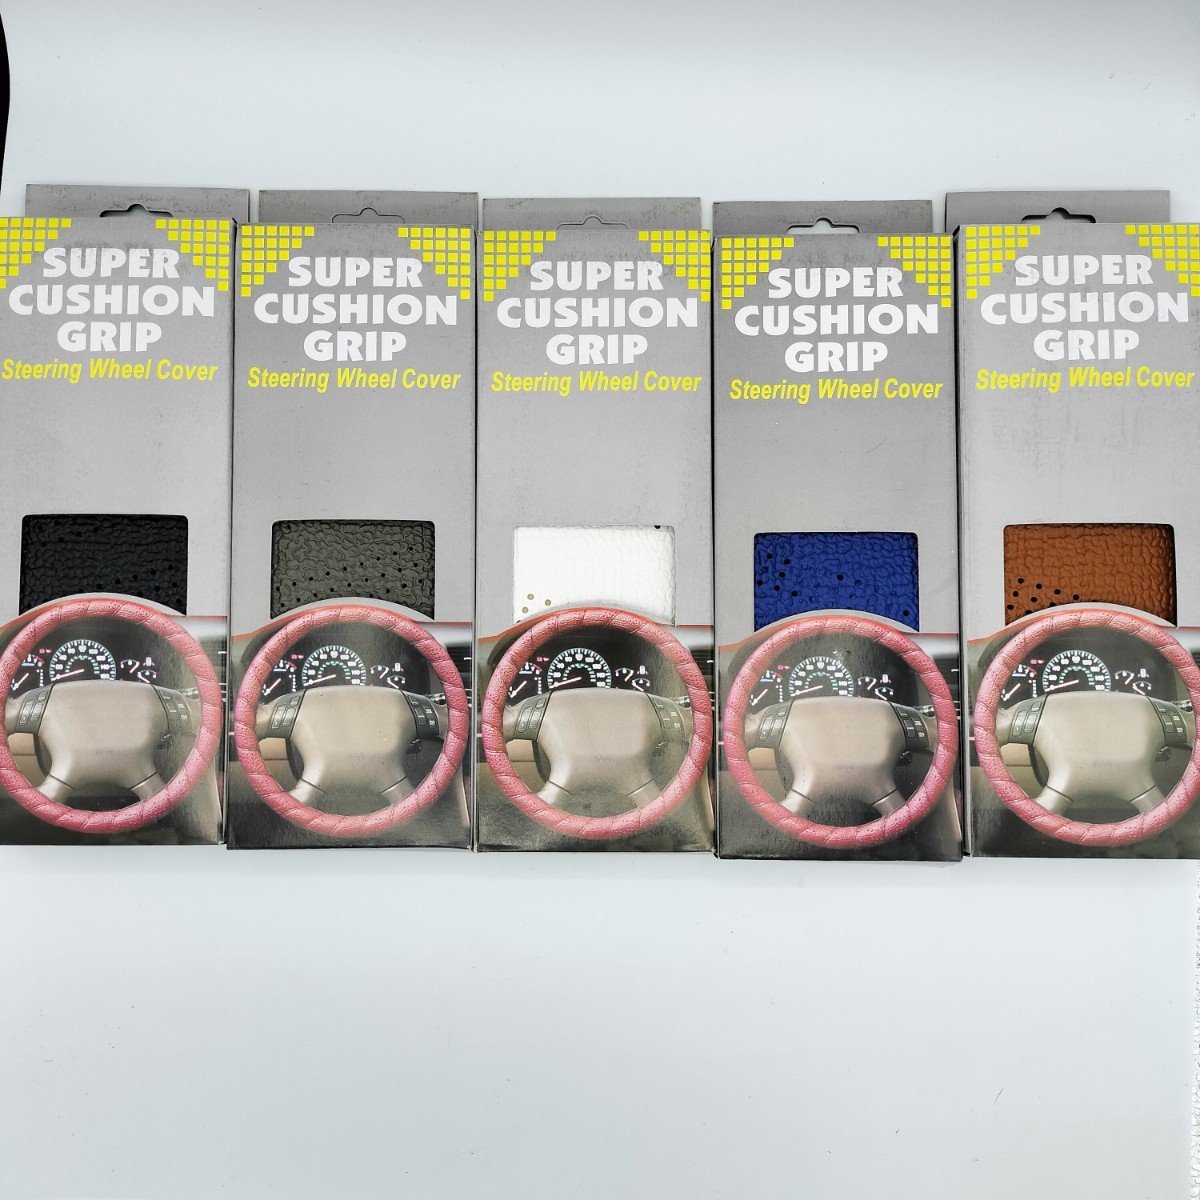 【ブラウン】SUPER CUSHION GRIP 3mm厚 スポーツグリップ ステアリングカバー ハンドルカバー 巻き付け パワーグリップ USDM 【匿名配送】_画像7